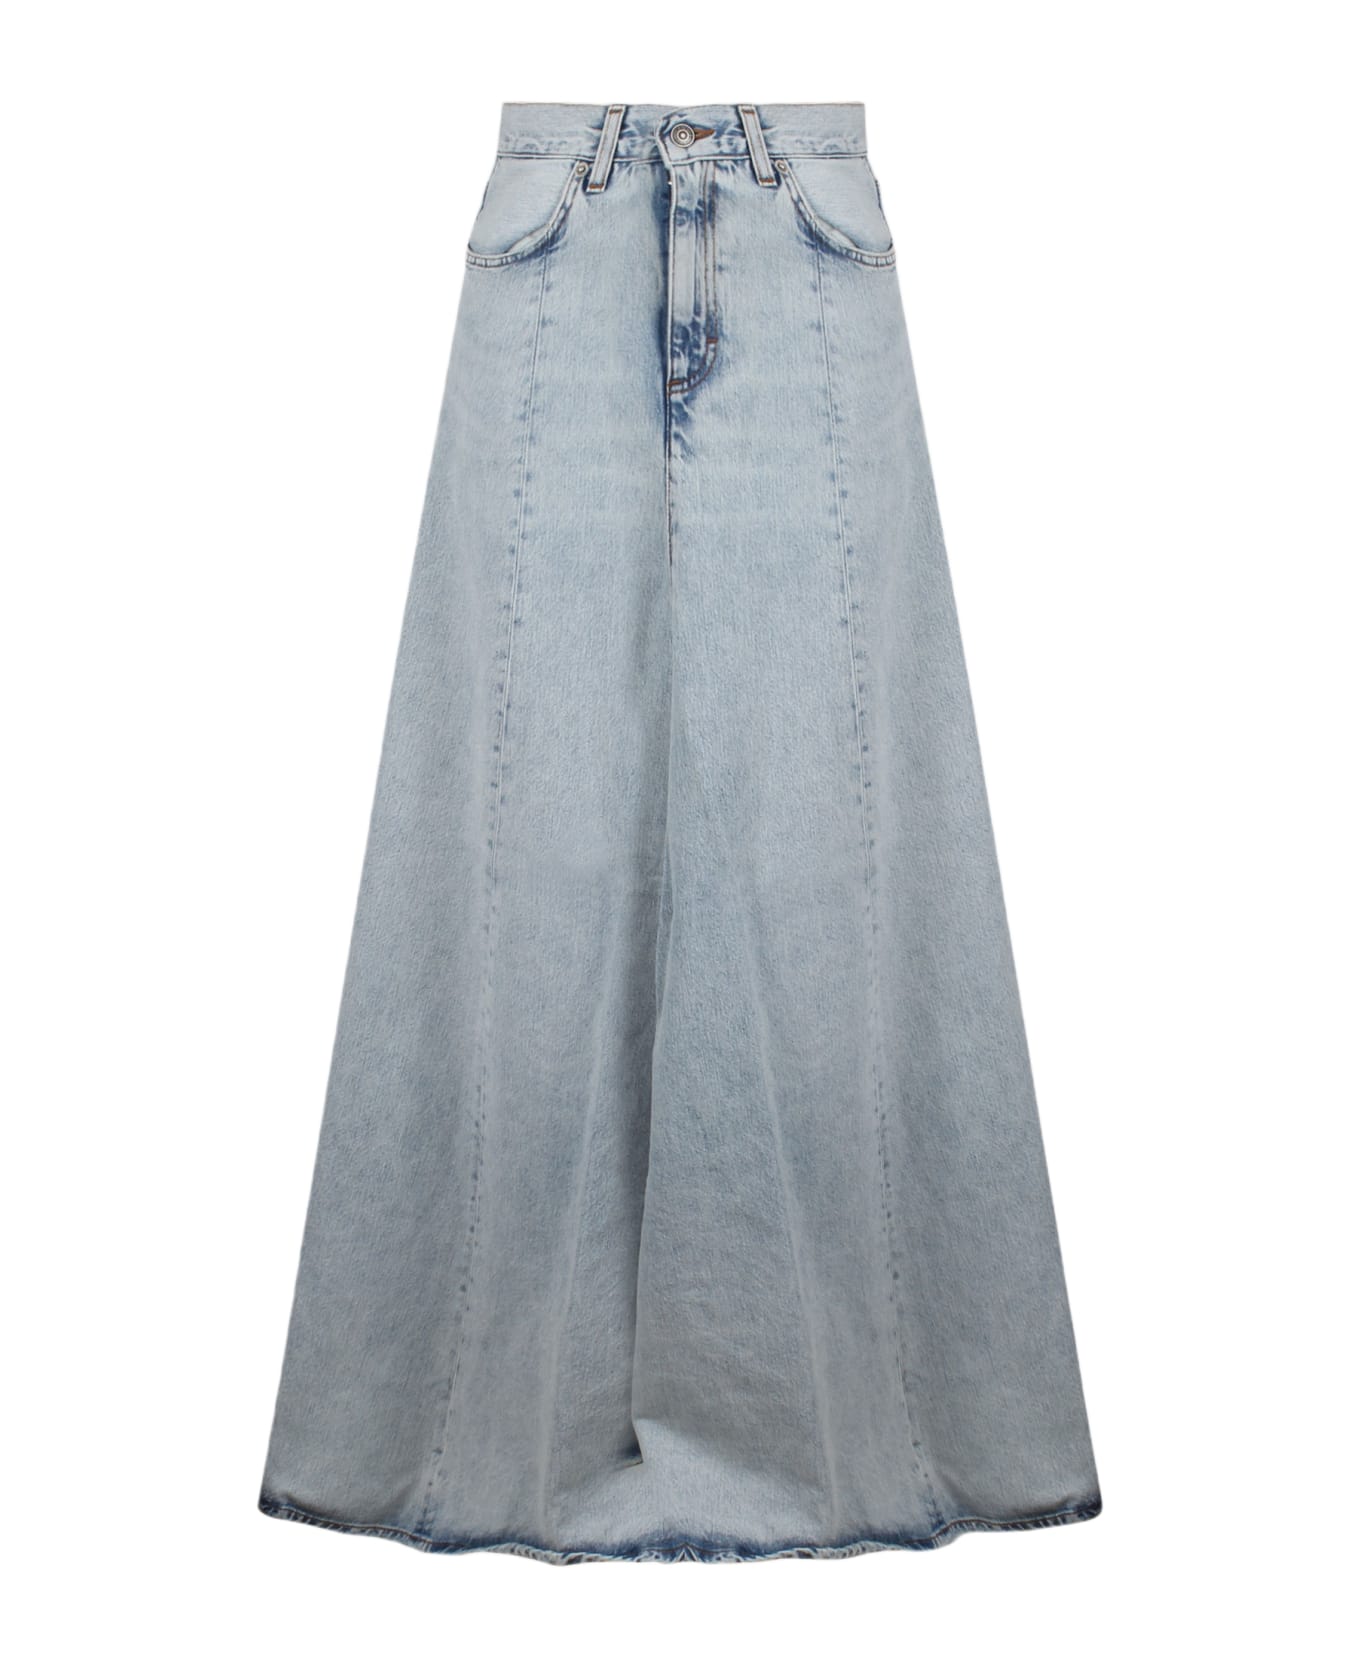 Haikure Serenity Stromboli Blue Denim Skirt - Blue スカート